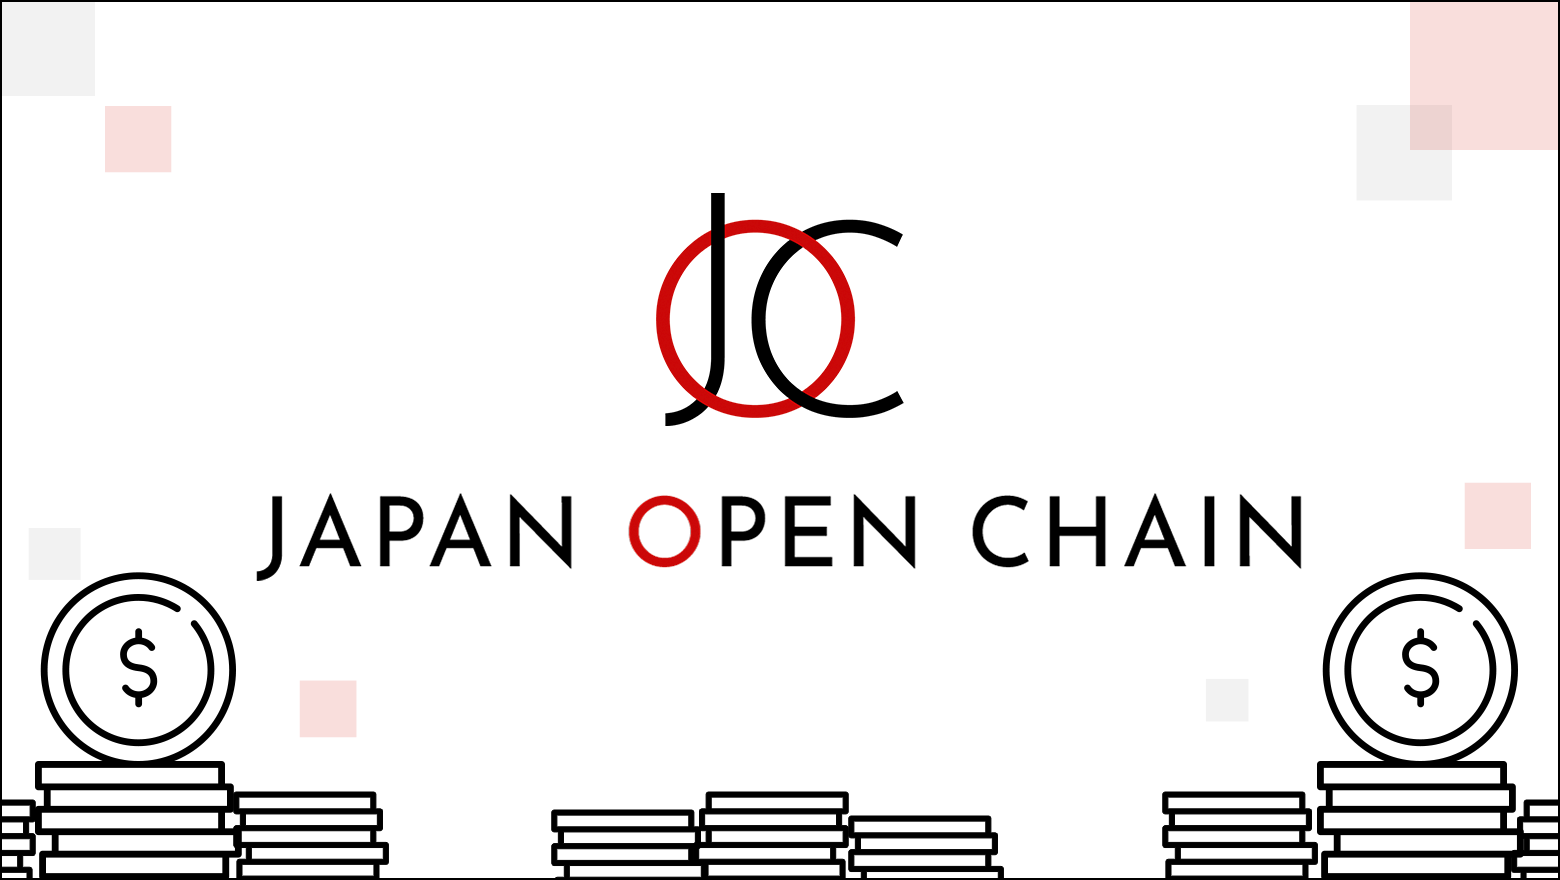 Japan Open Chain